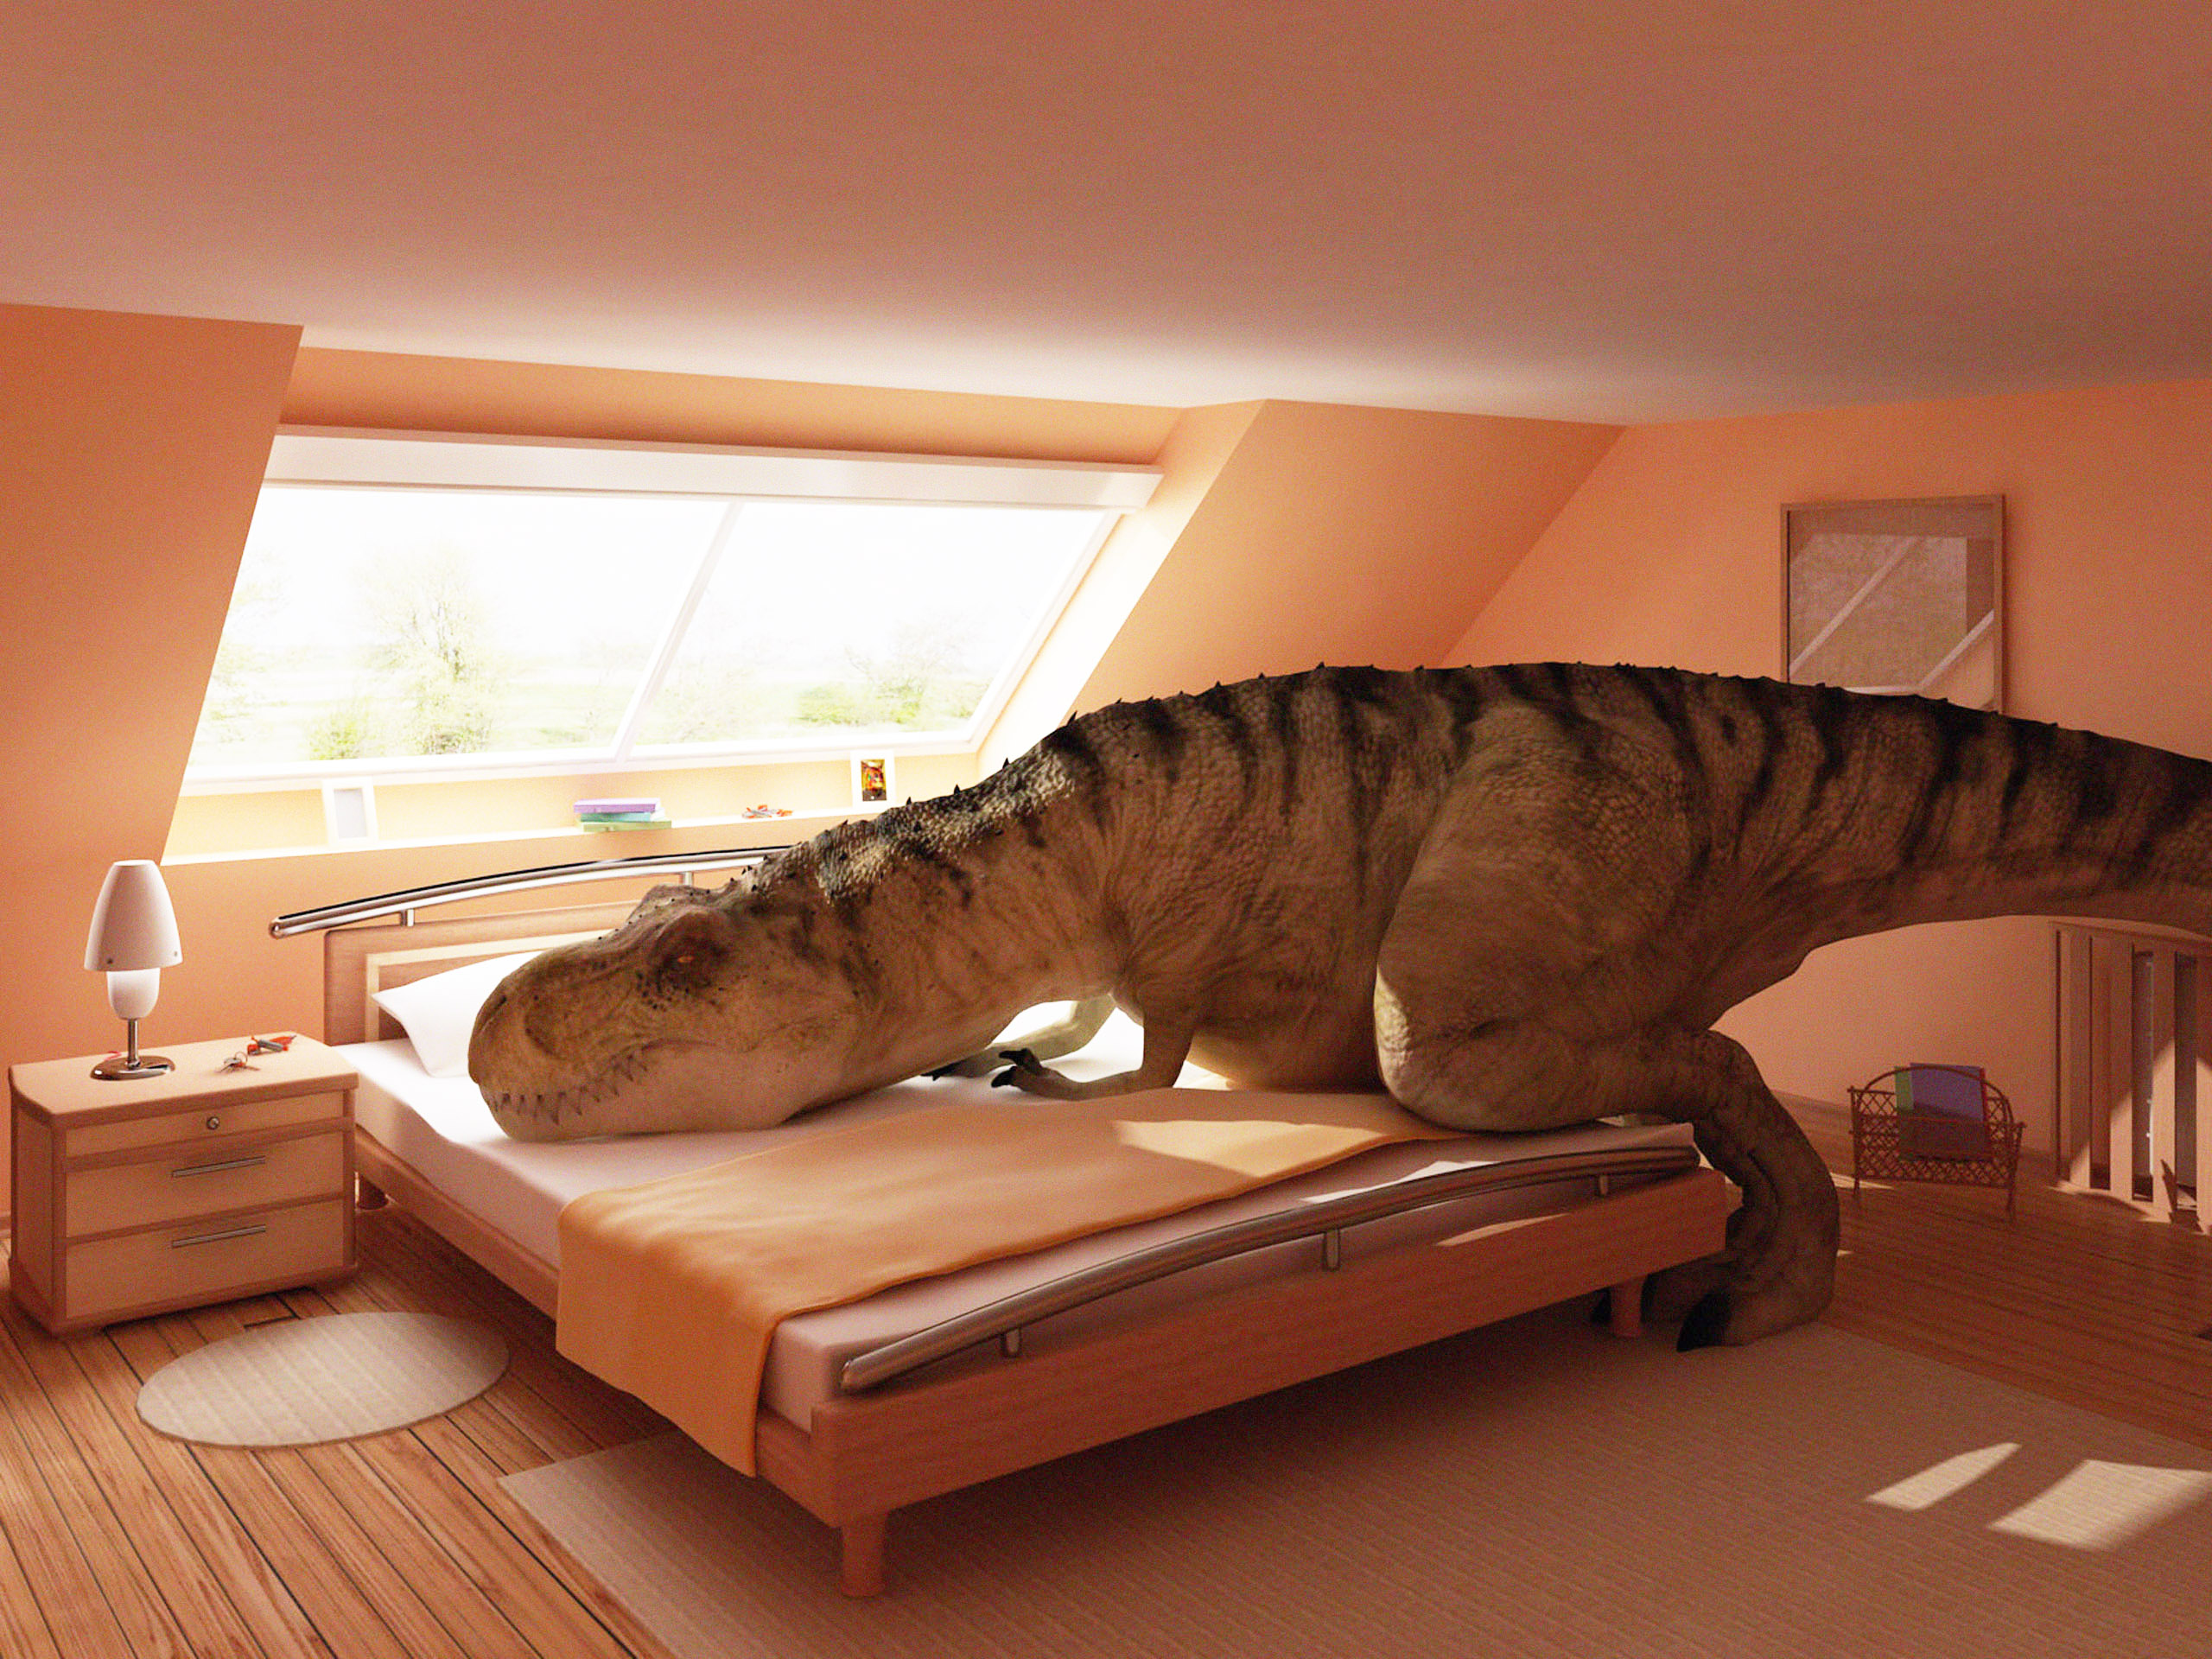 Tyrannosaurus Rex dinosaur in HD desktop wallpaper.